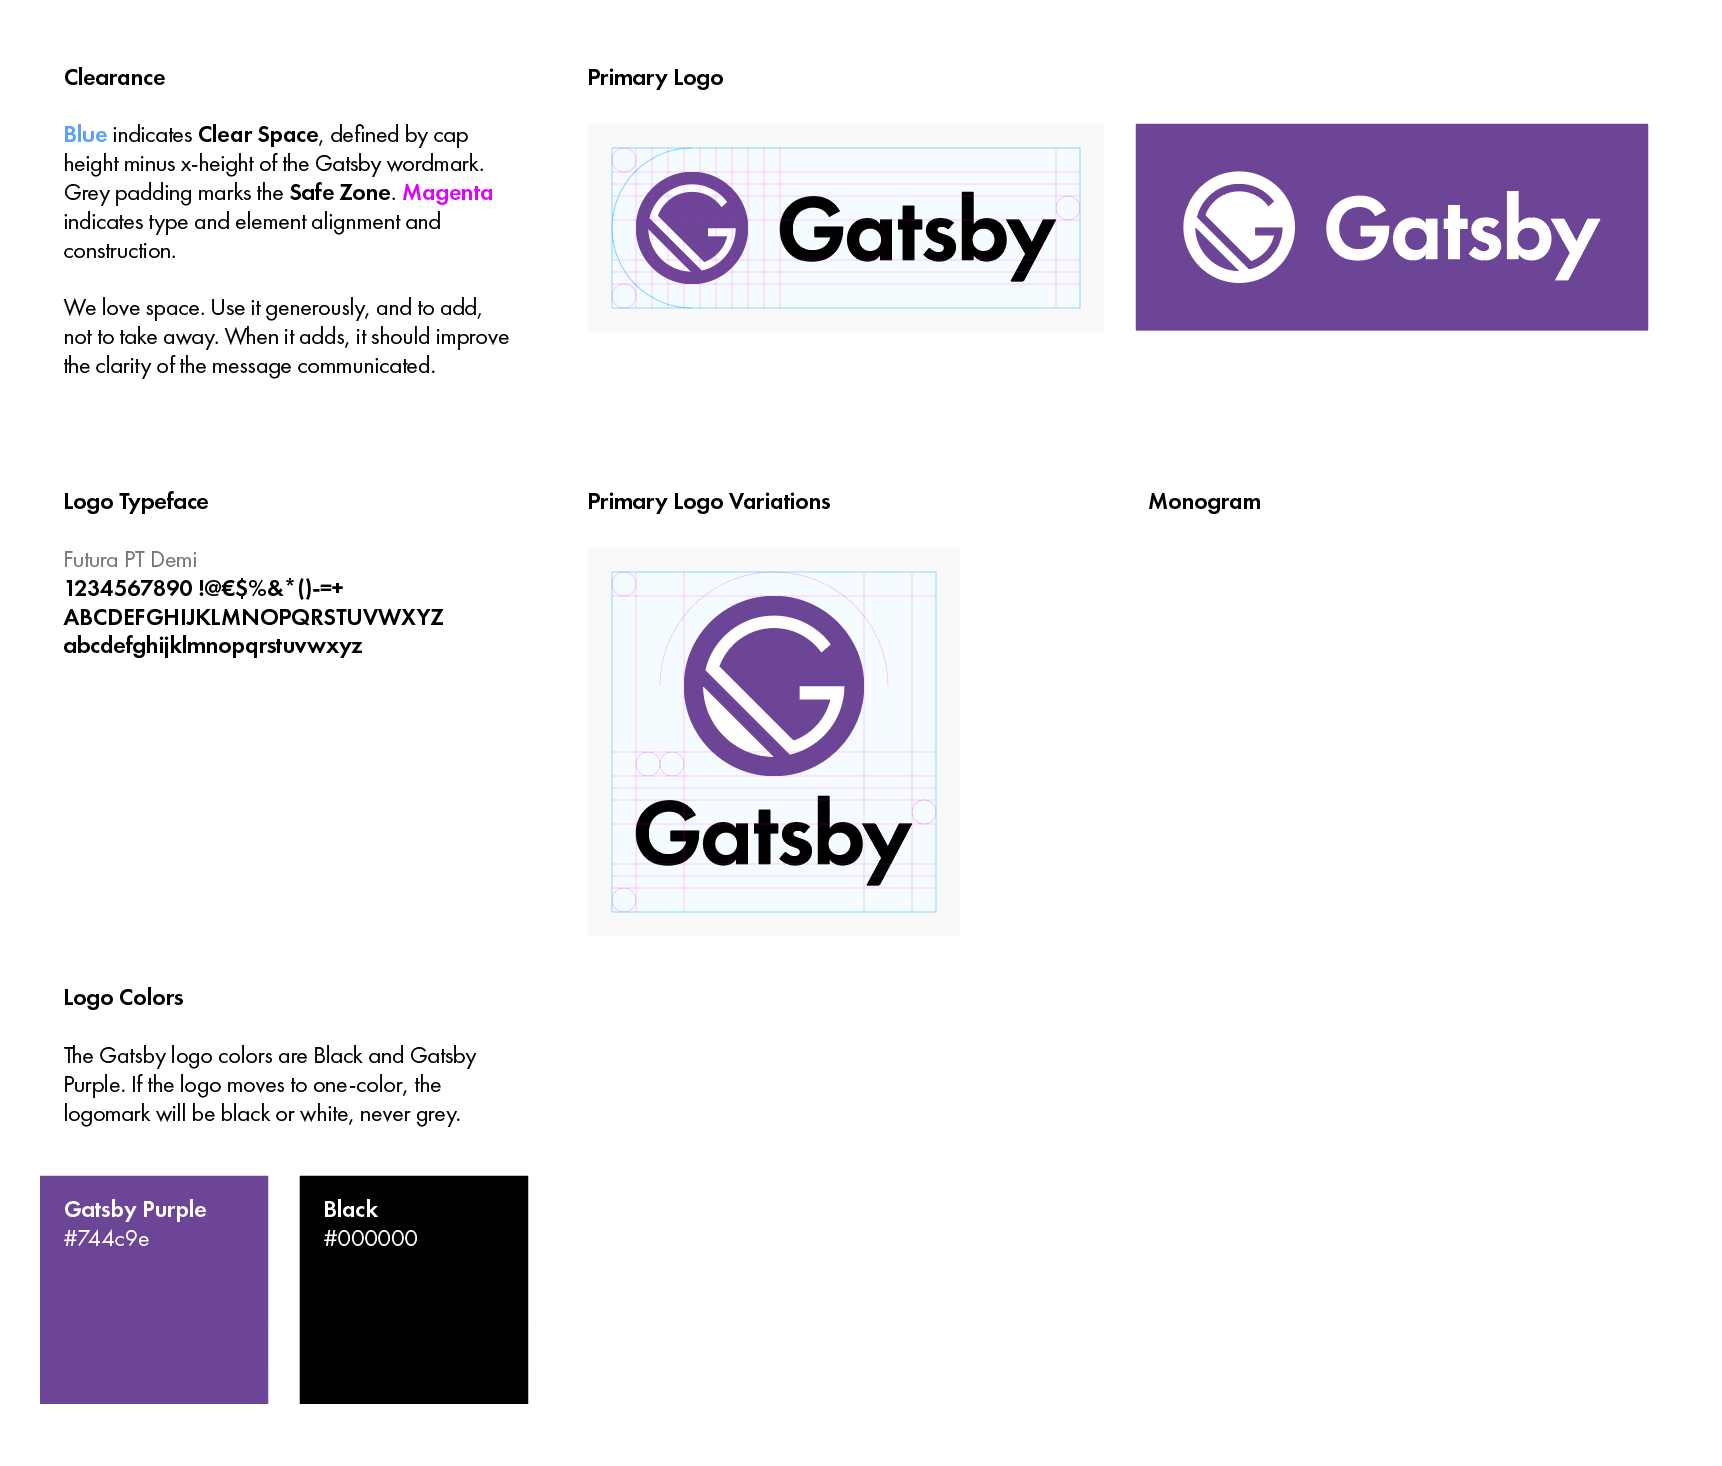 Purple White Logo - brand] Gatsby logo definition · Issue #3363 · gatsbyjs/gatsby · GitHub